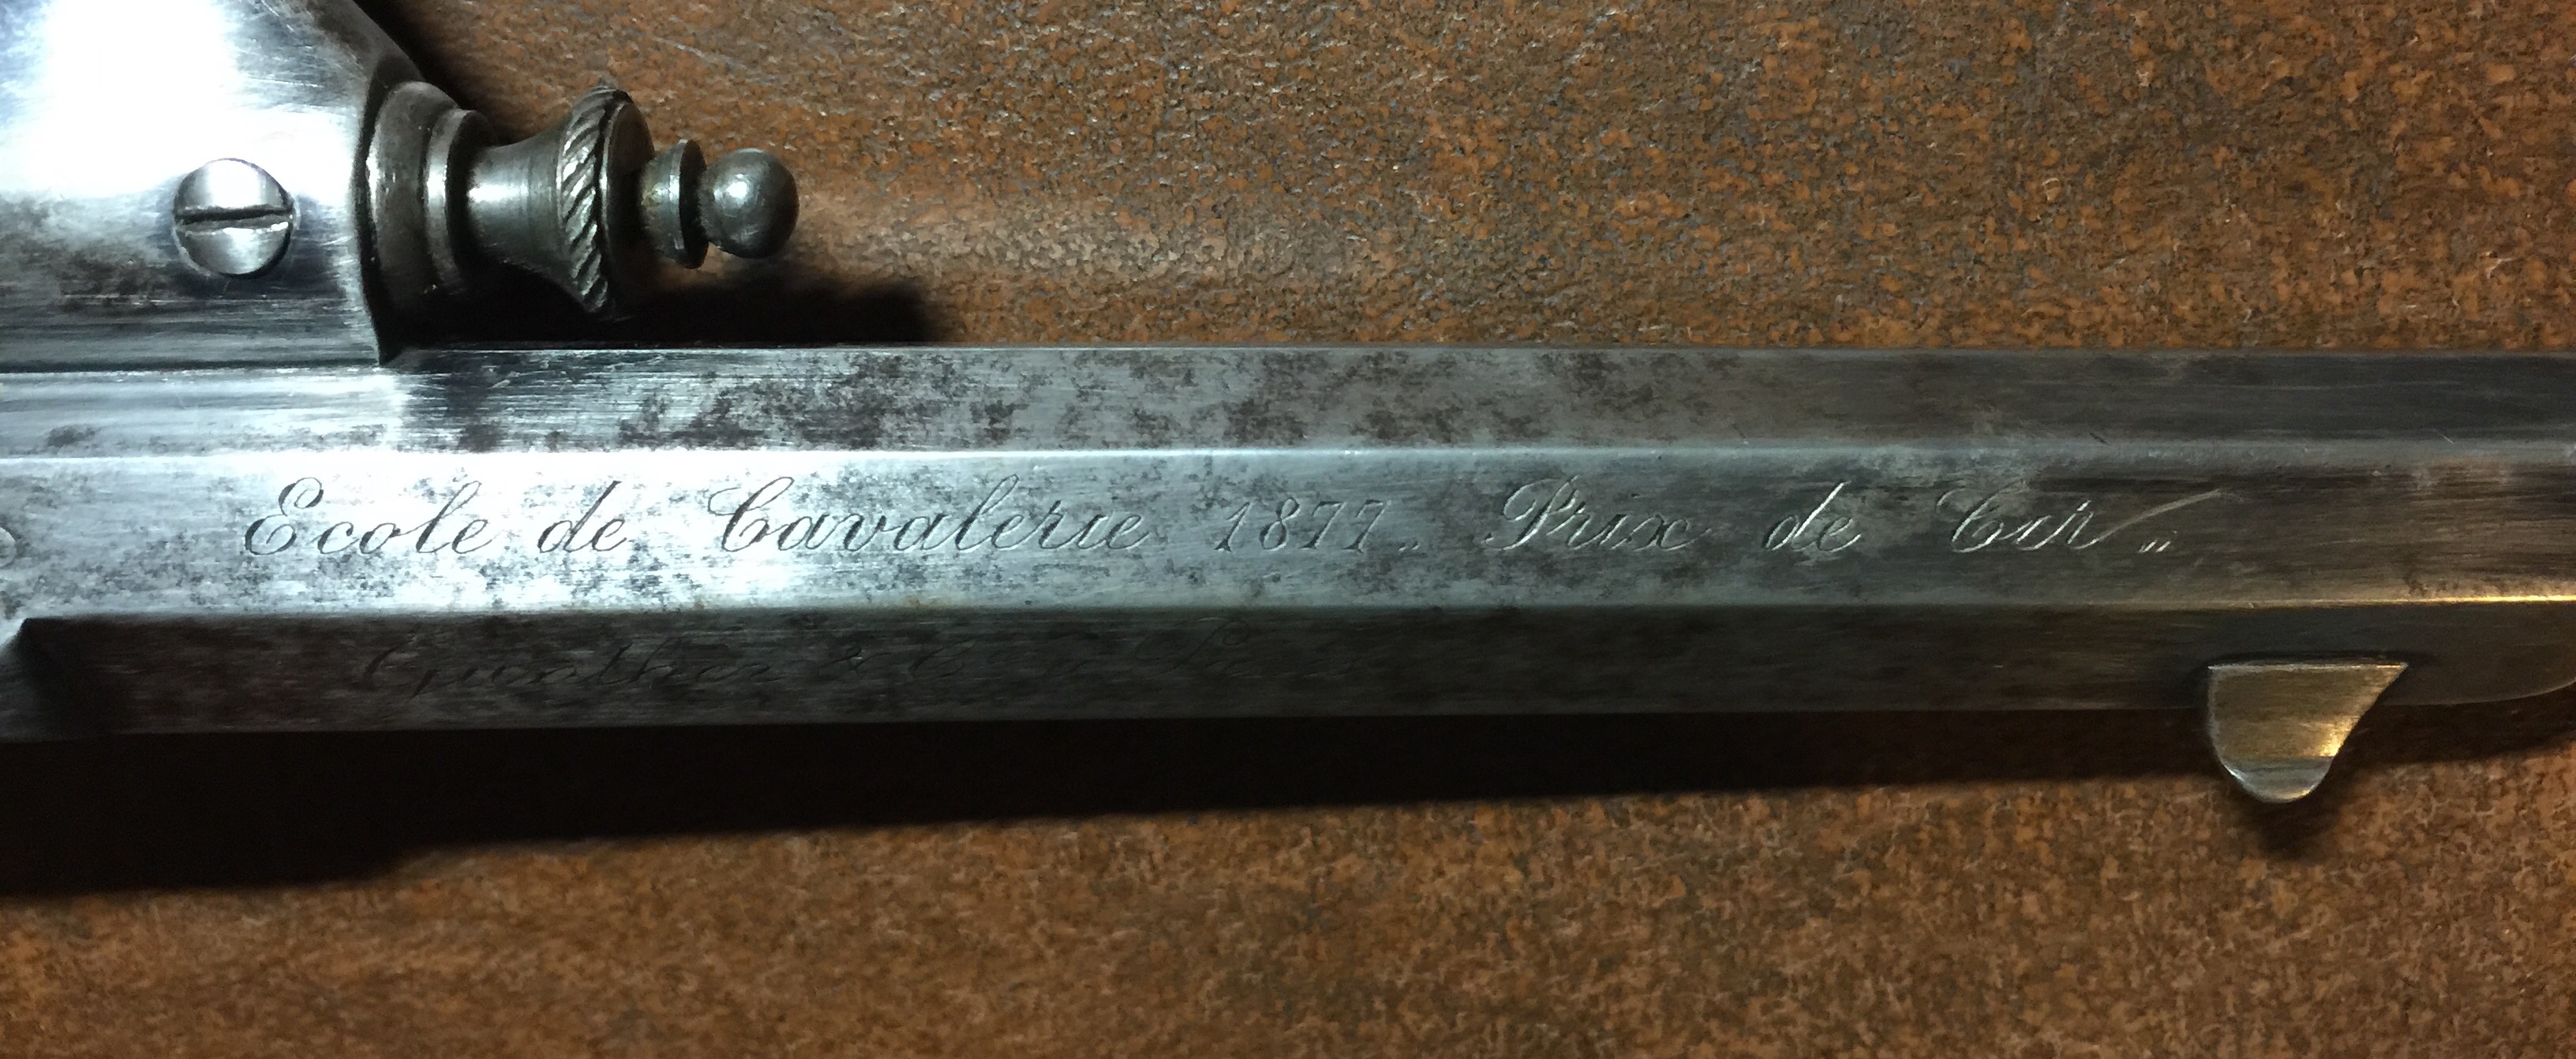 Revolver type warnant en 11mm 73 à brisure du Général Chatelain: Ecole de cavalerie 1877, Prix de tir